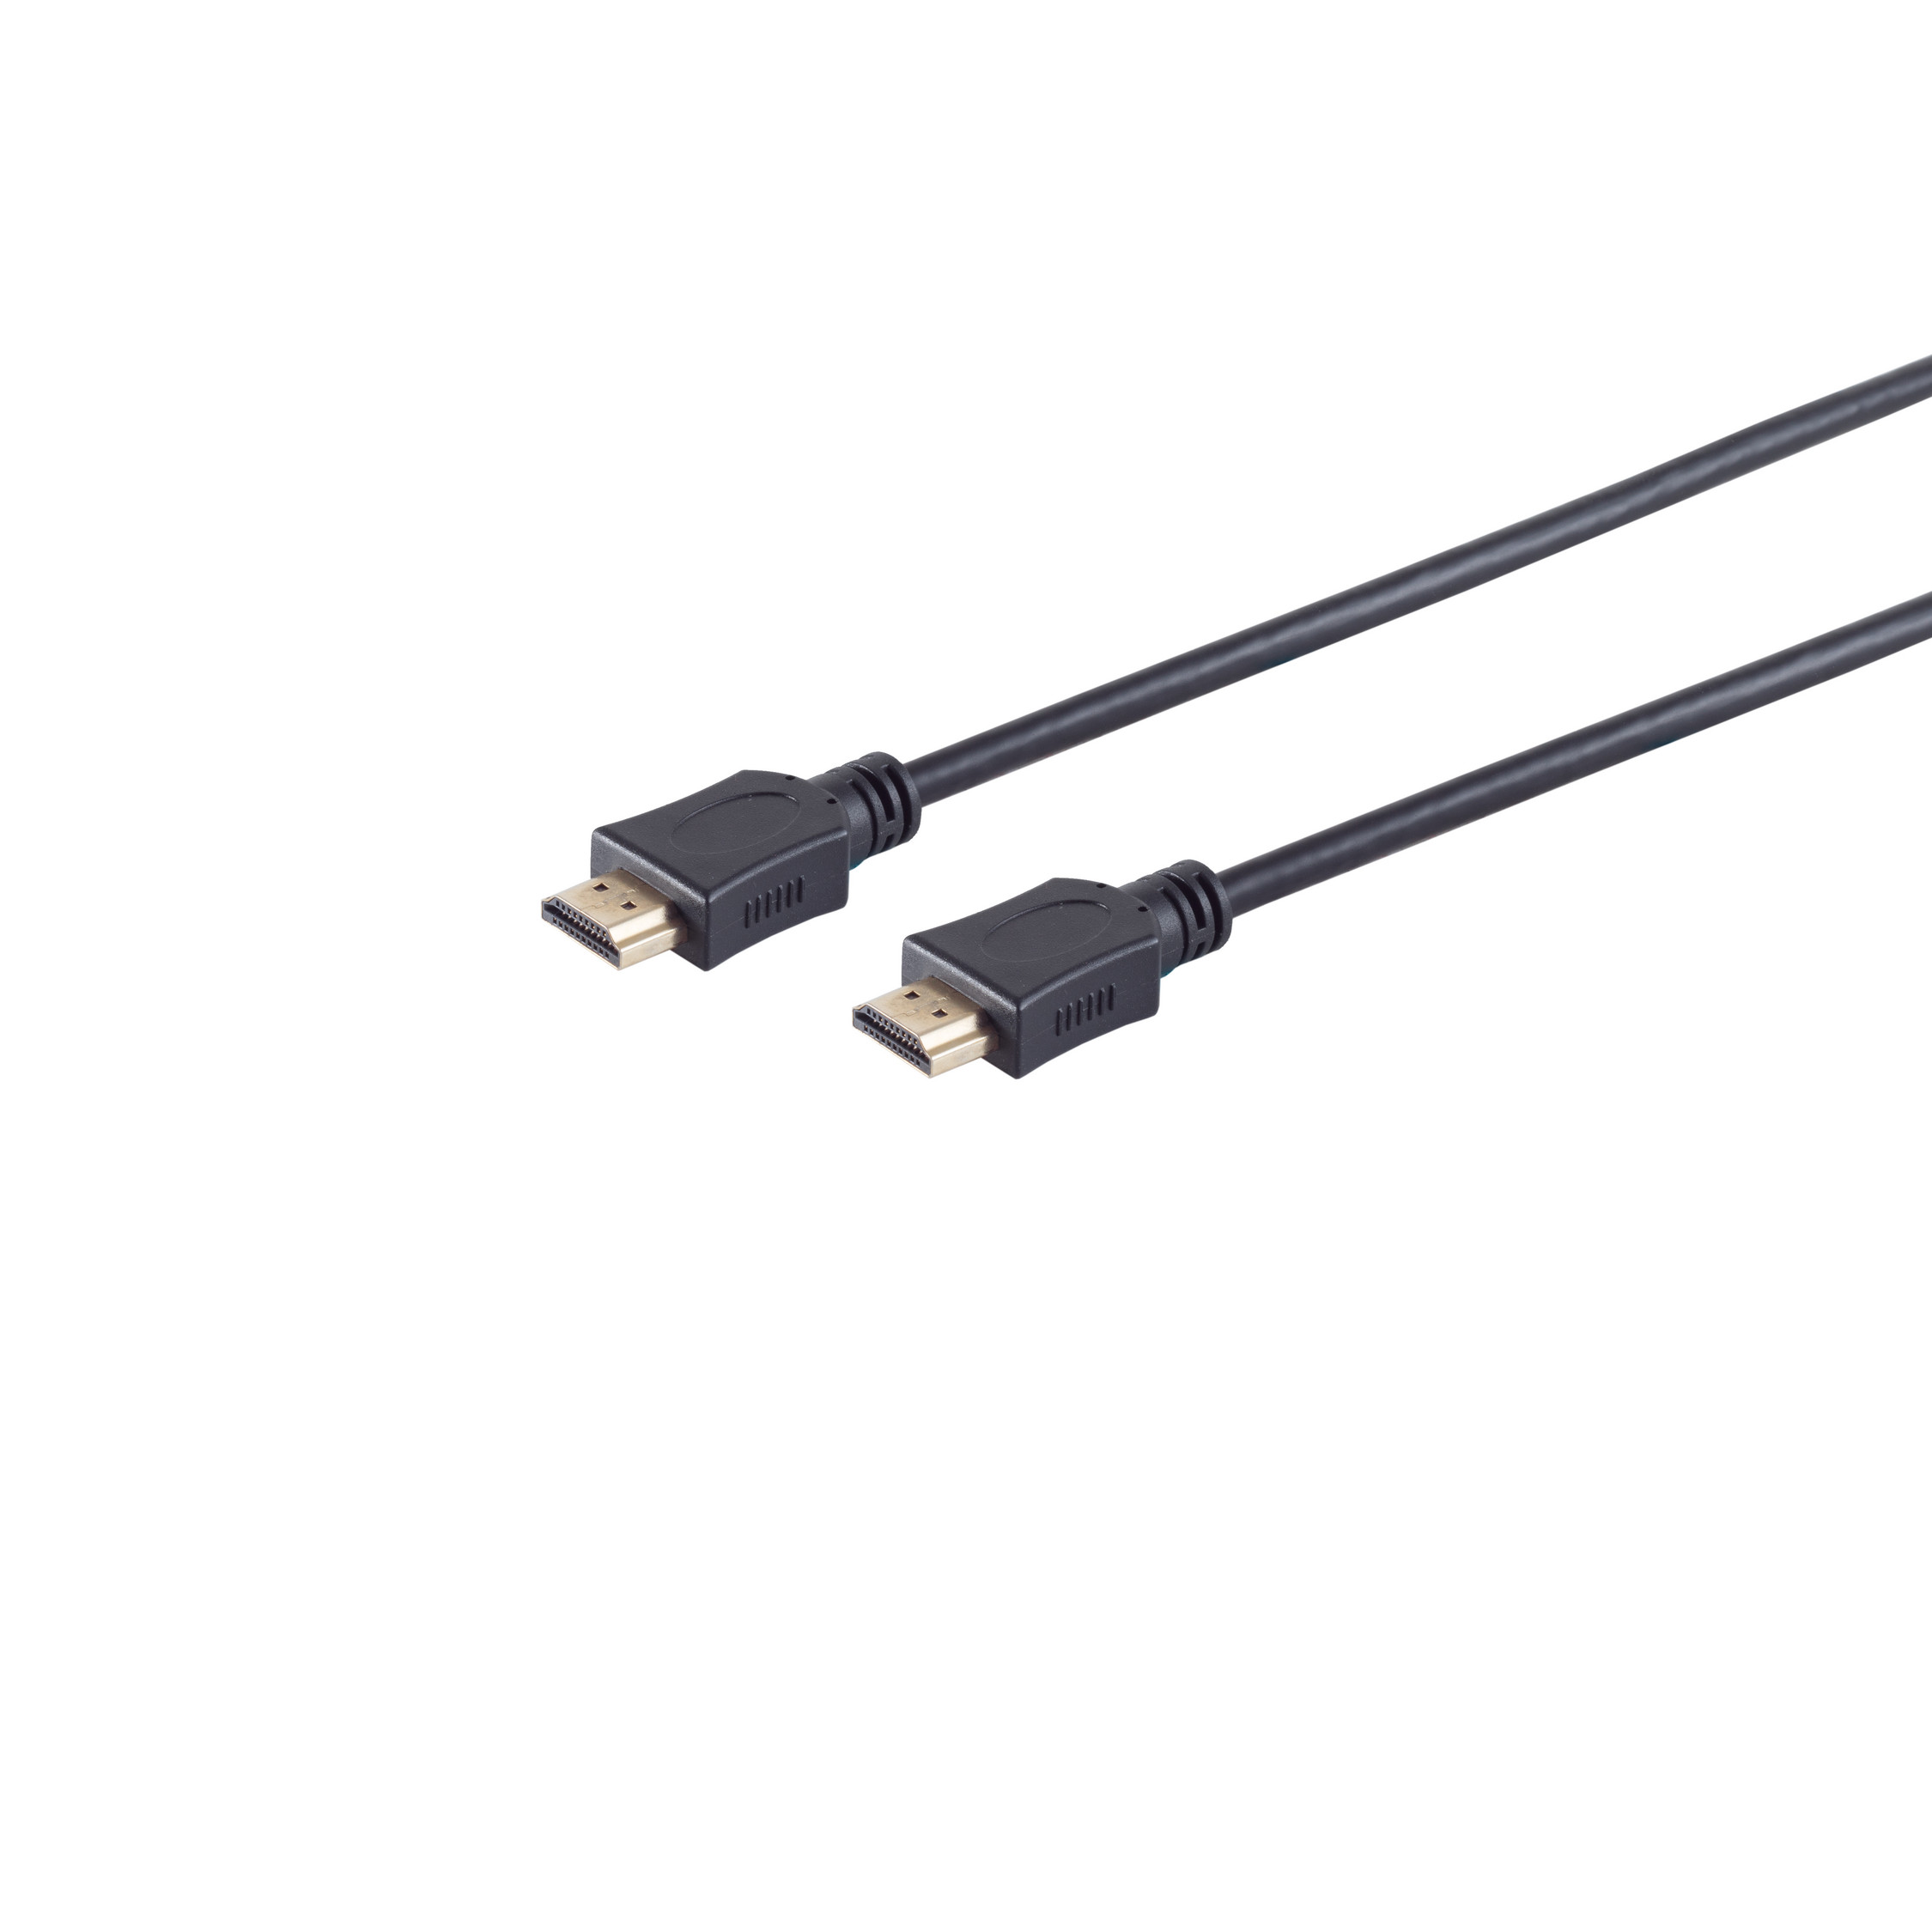 S/CONN MAXIMUM CONNECTIVITY HDMI / HEAC verg. A-Stecker 0,5m Kabel HDMI HDMI A-Stecker